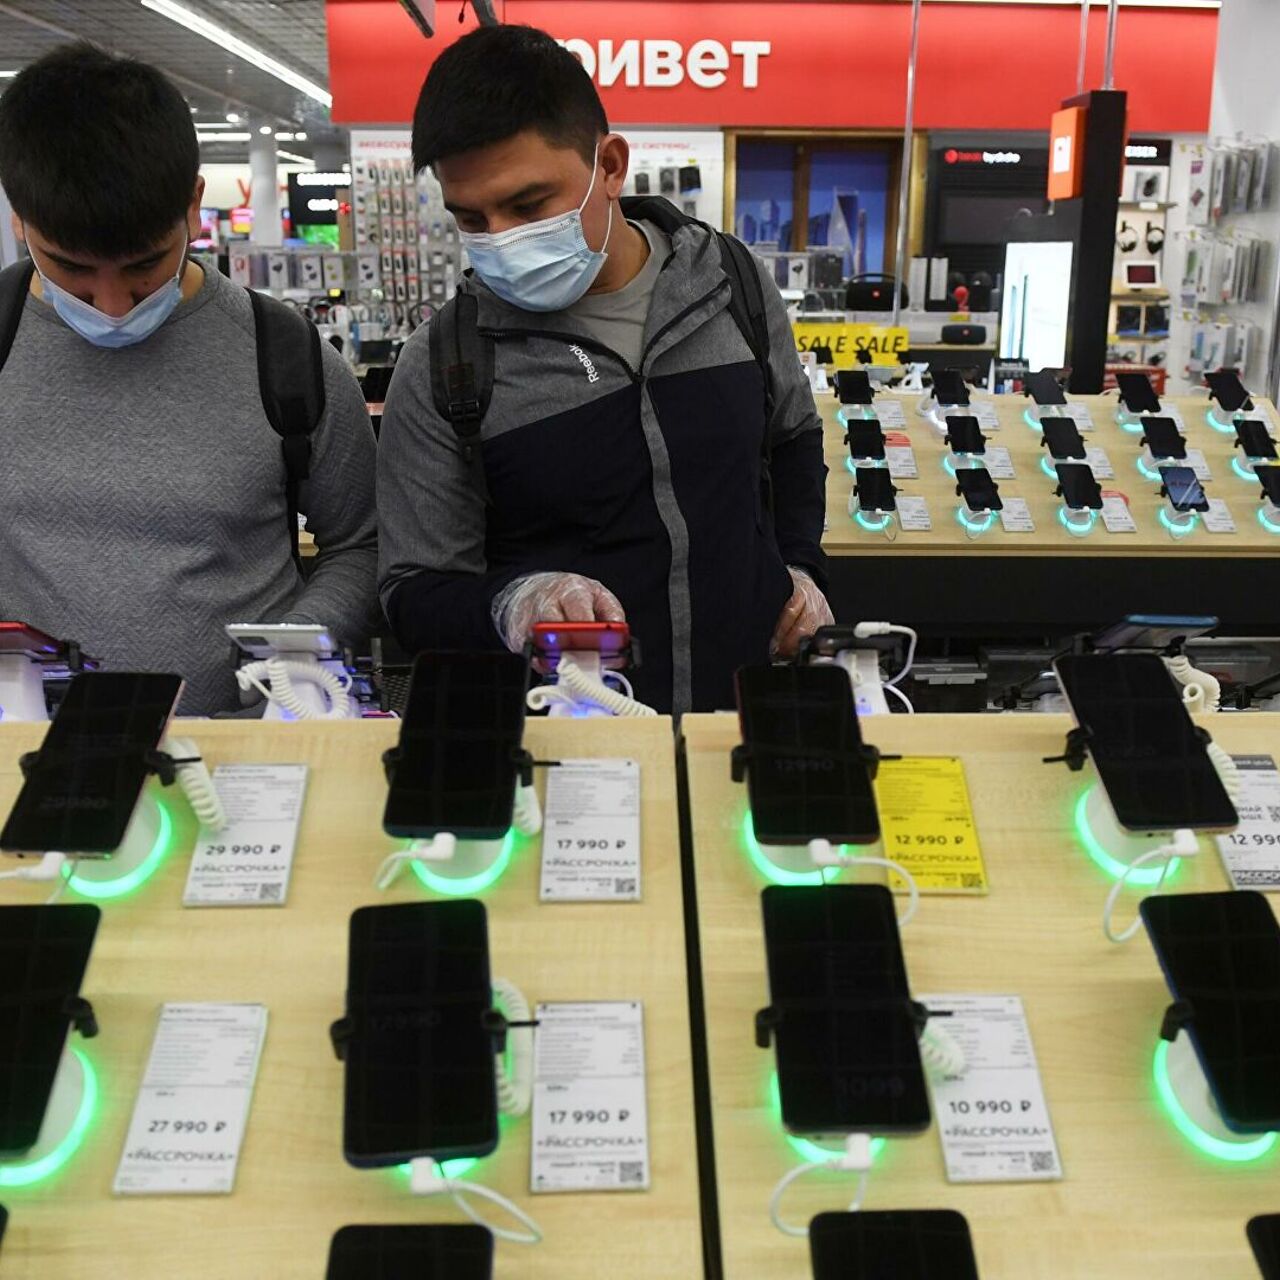 Как магазины обманывают покупателей мобильных телефонов - Рамблер/финансы